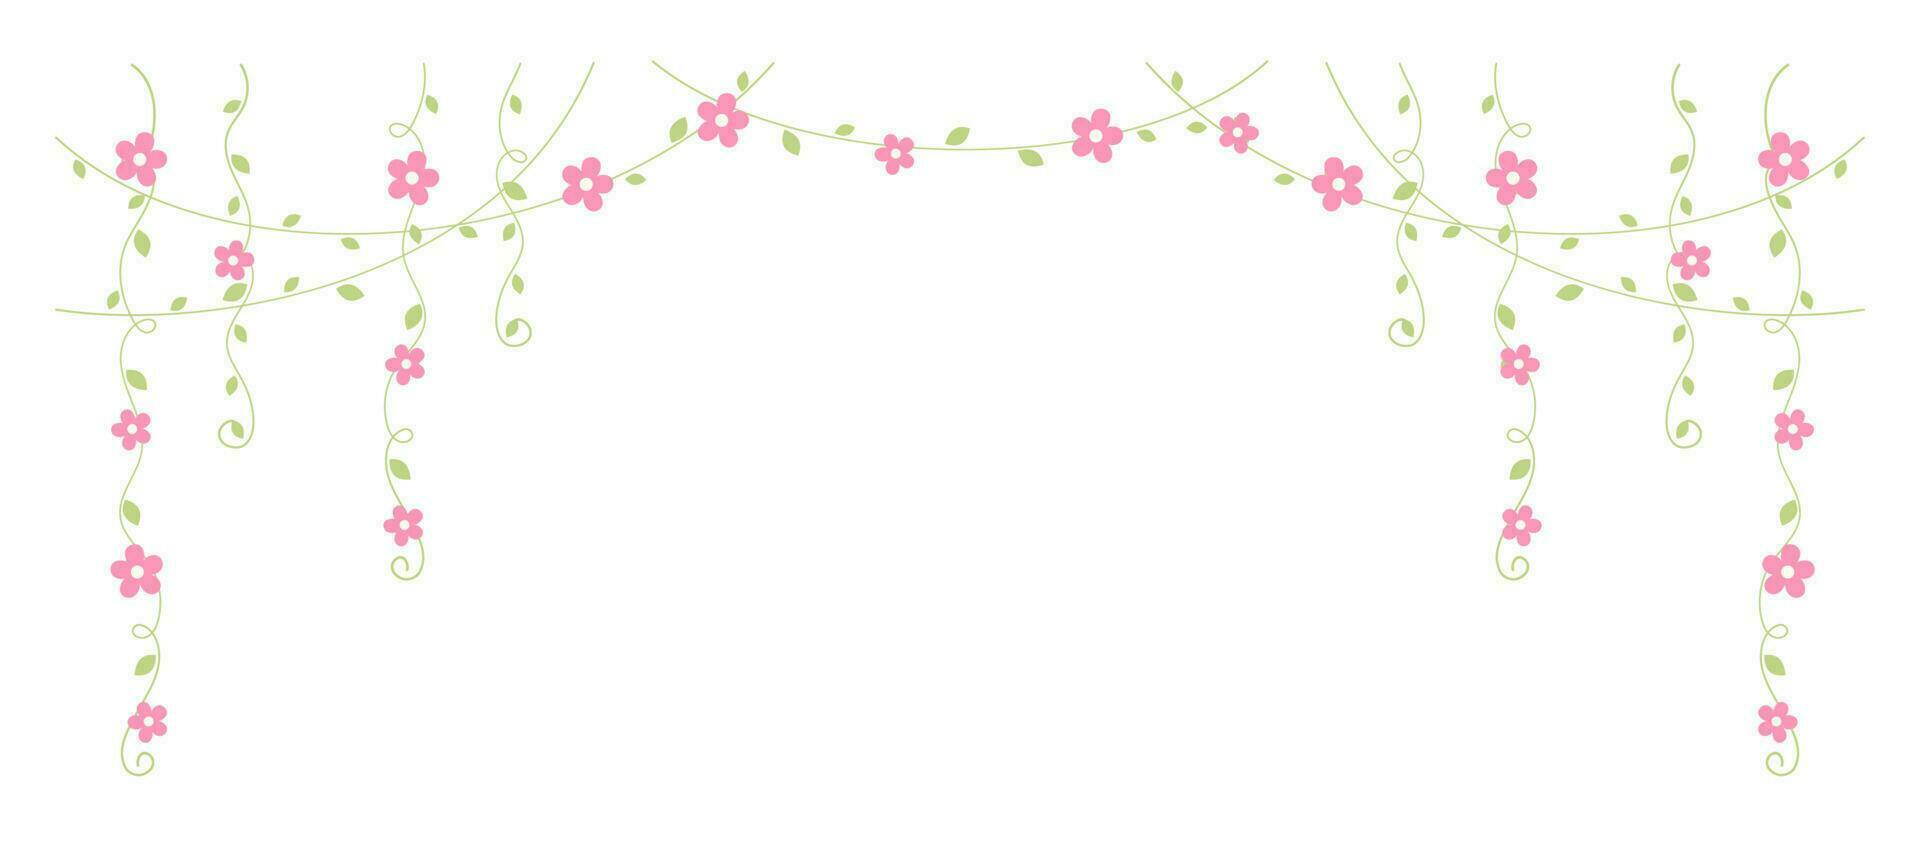 hängande vinstockar med rosa blommor vektor illustration. enkel minimal blommig botanisk vin ridå design element för vår.